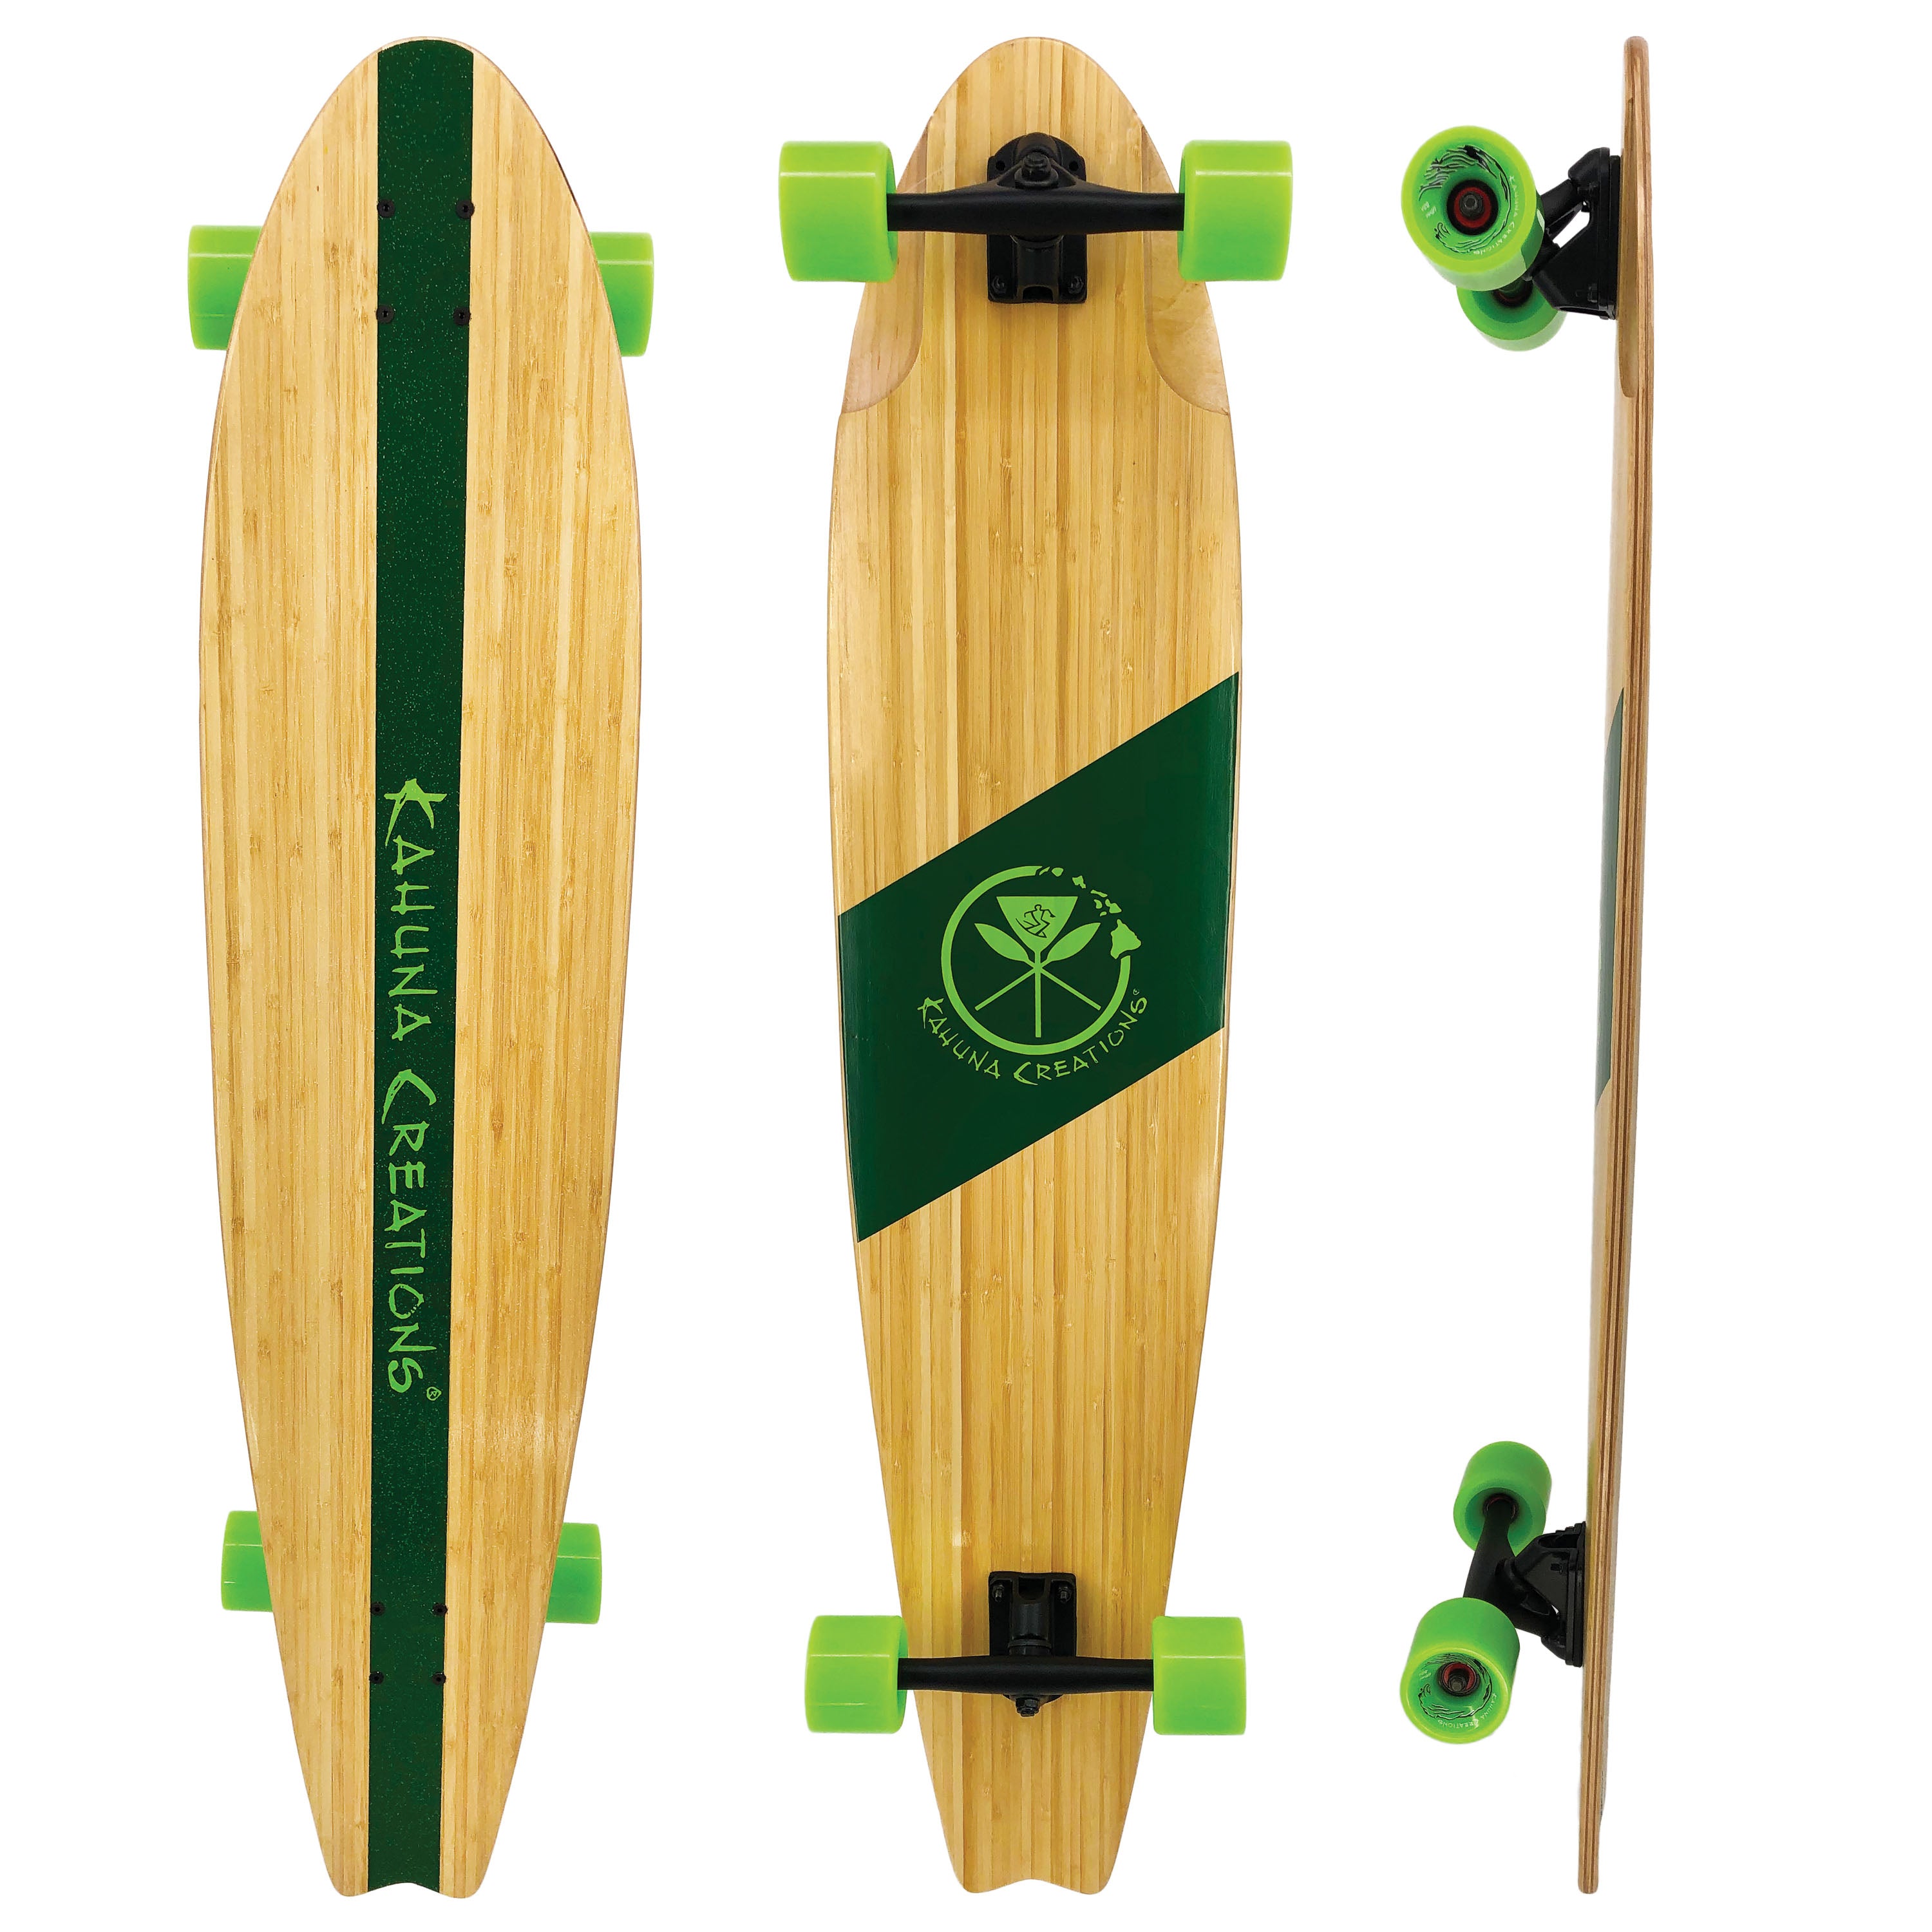 Creations Pohaku Bamboo 46" Skateboard